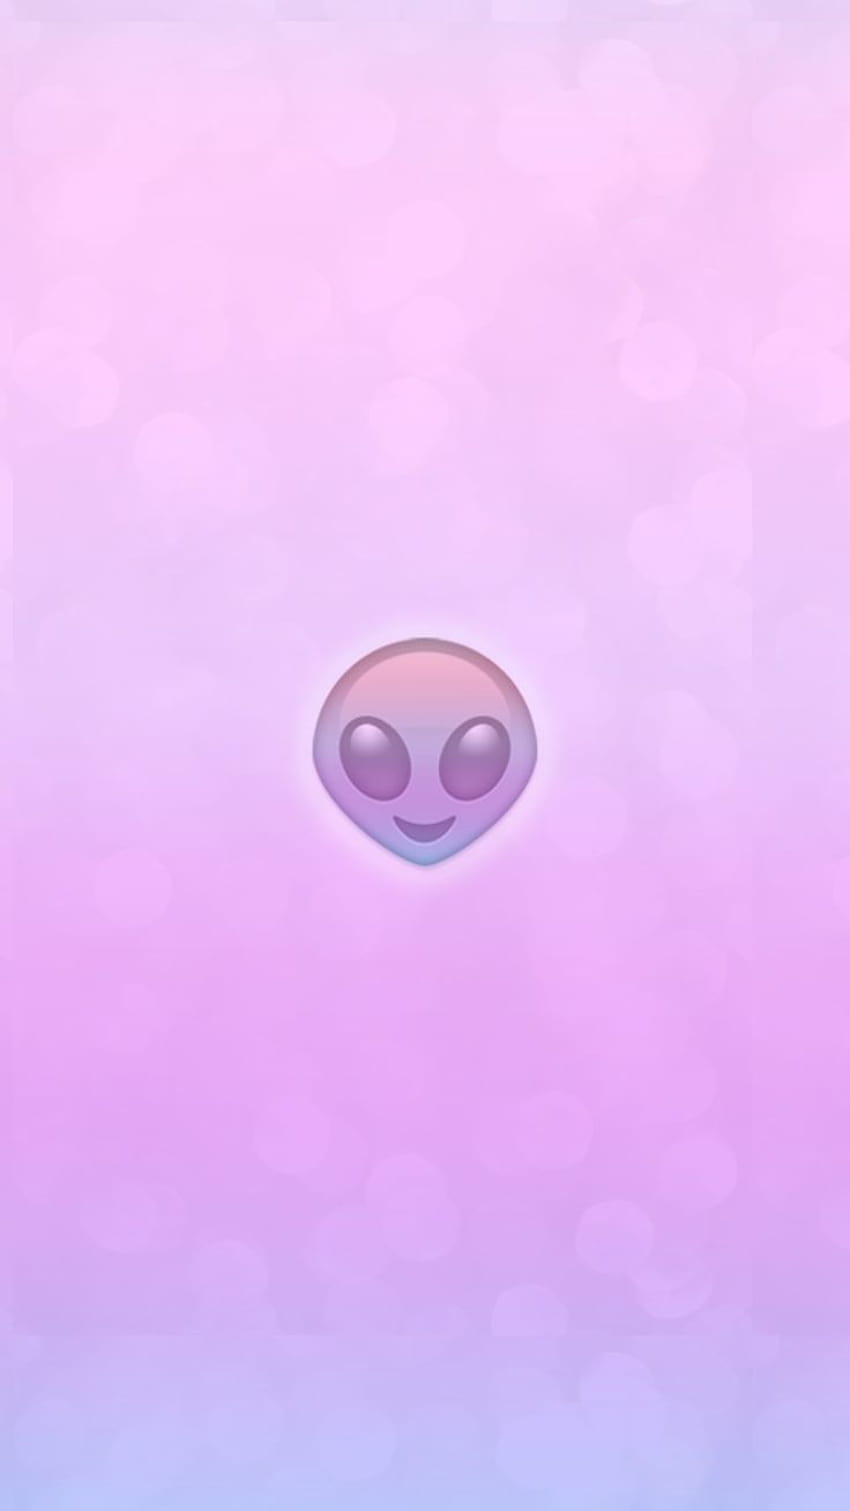 plano de fundo, iPhone, Android, rosa, roxo, gradiente, ombre, alienígena, emoji, emoji alienígena Papel de parede de celular HD